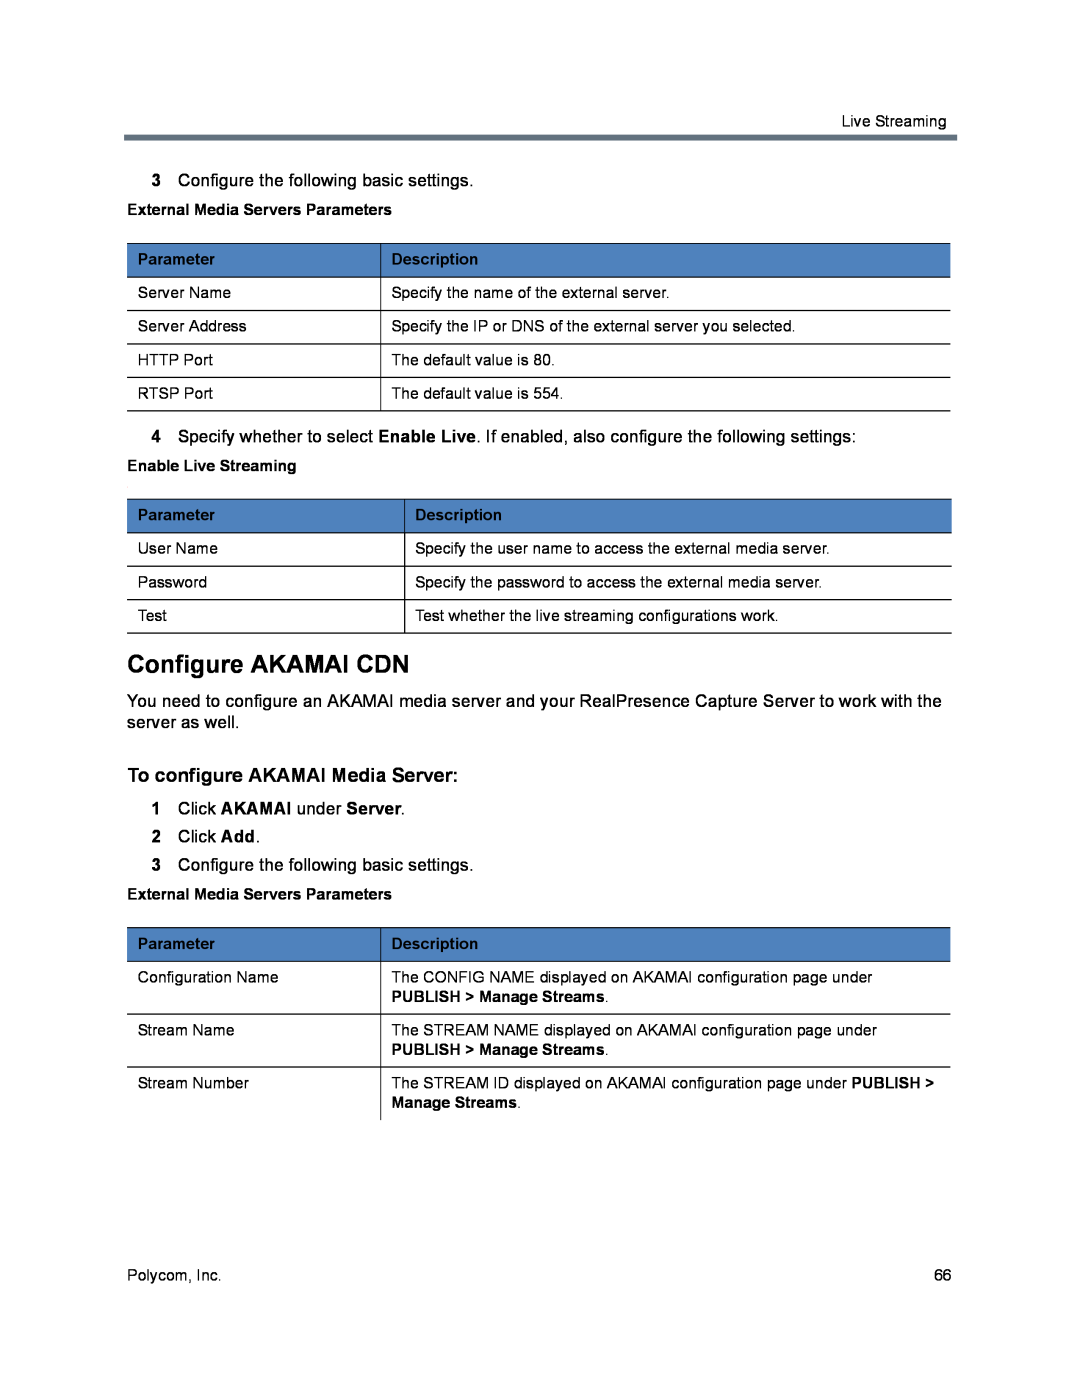 Polycom 40/0 manual Configure AKAMAI CDN, To configure AKAMAI Media Server, External Media Servers Parameters, Description 